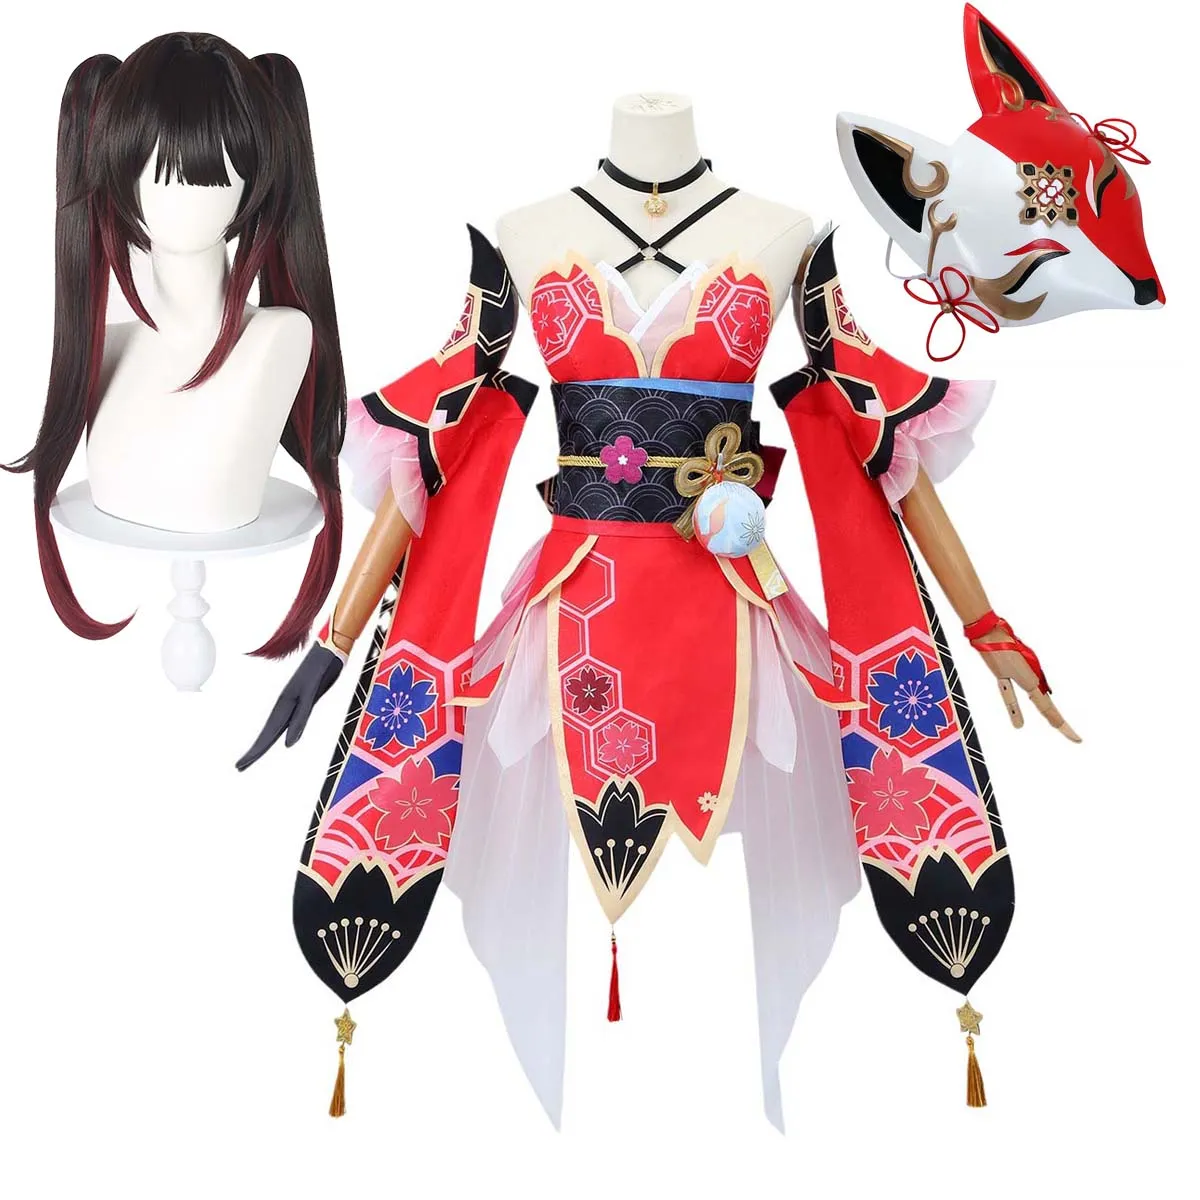 لعبة Girl Game Play Play Honkai Star Rail Game Sparkle Cosplay Costume with Wig Fox Mask مجموعة كاملة